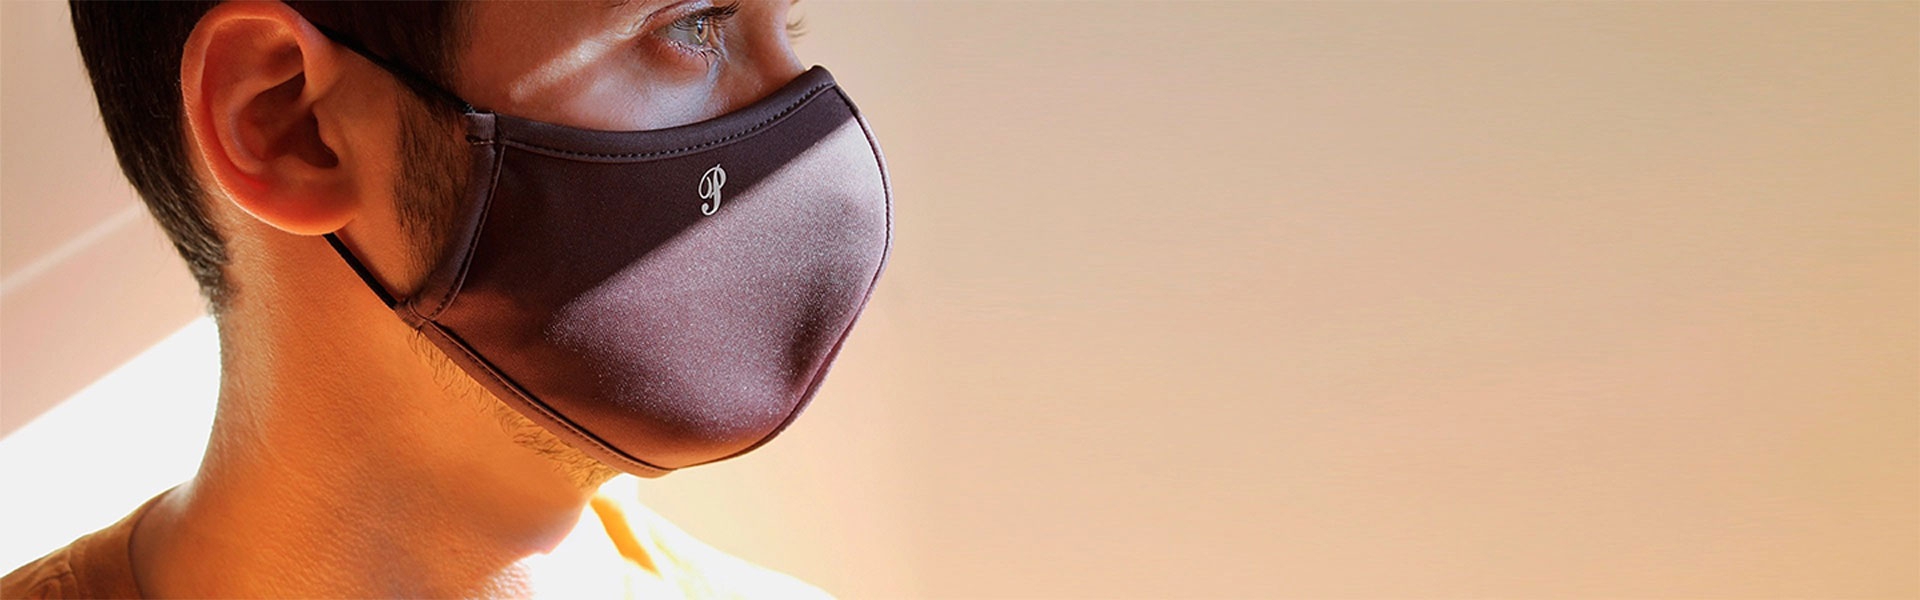 Masks online – reusable cloth masks